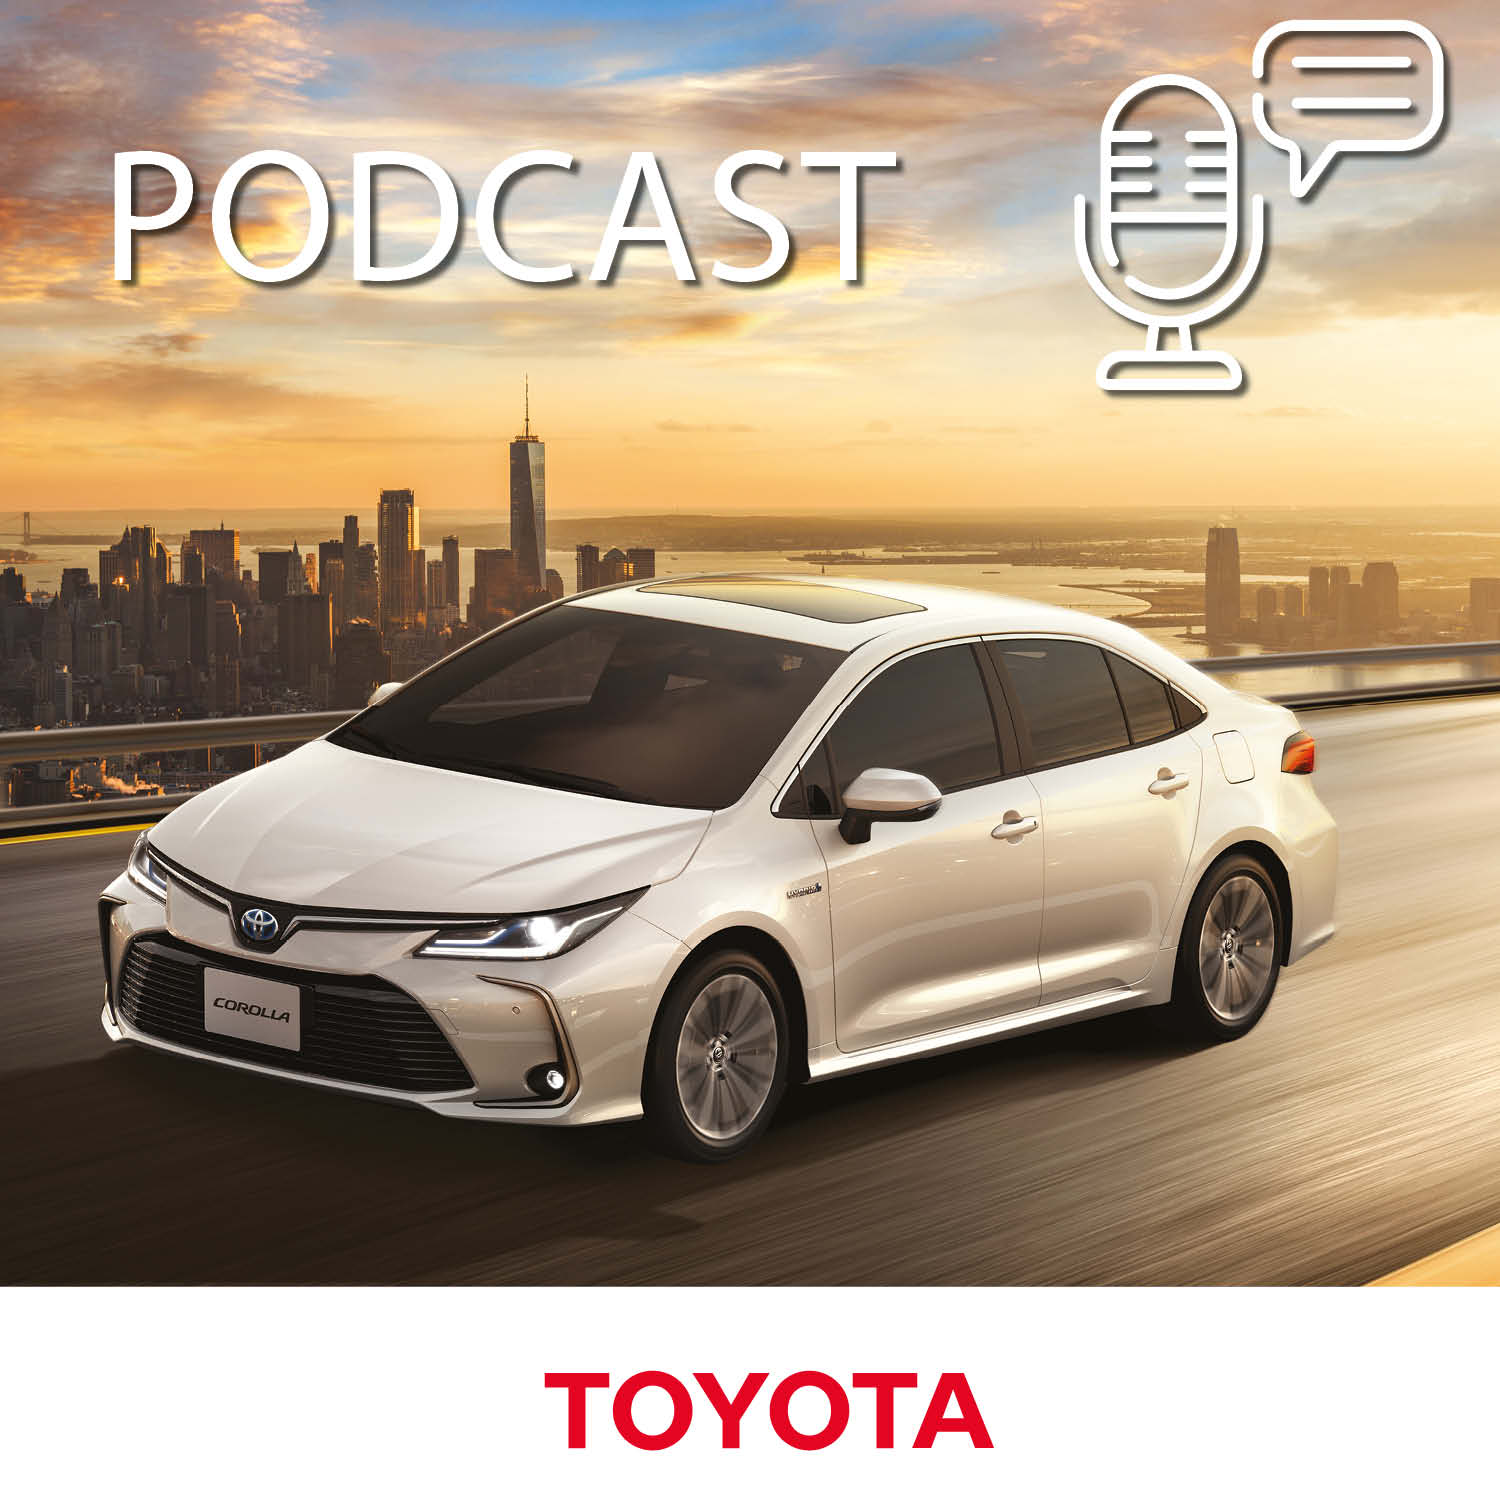 As apostas da Toyota para um futuro mais sustentável